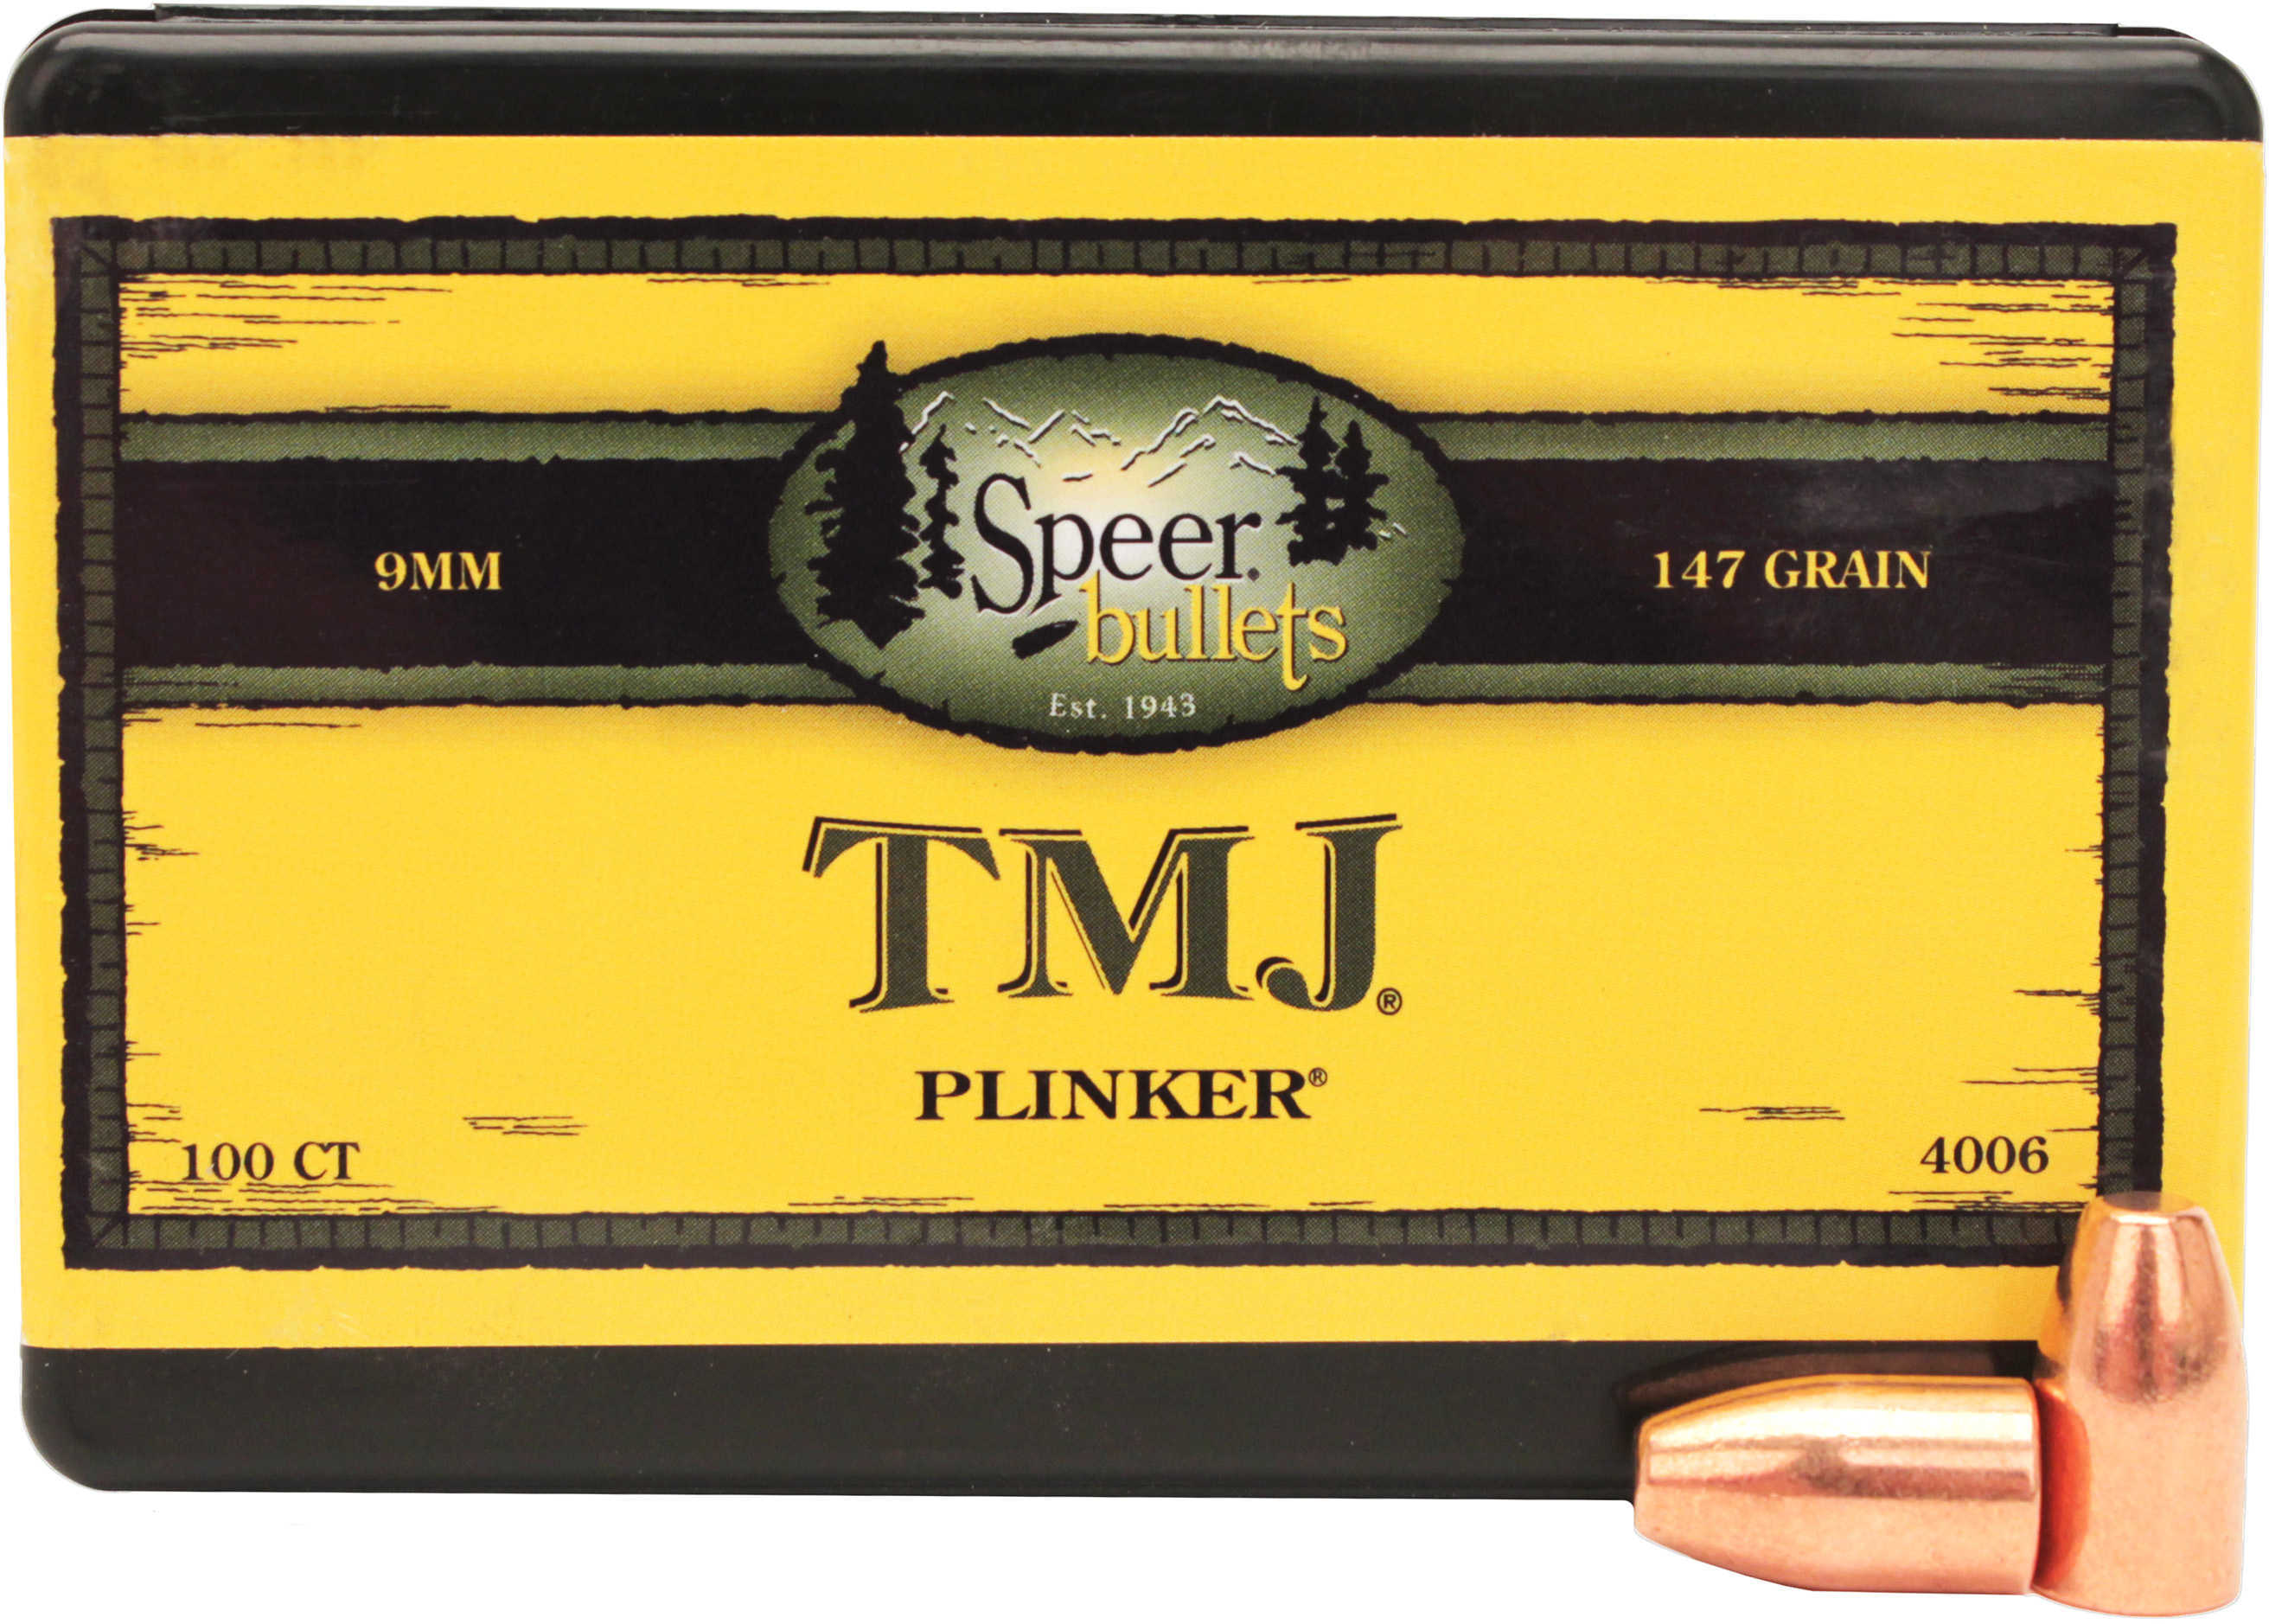 Speer Bullets, 9mm 147 Grains TMJ - Brand New In Package